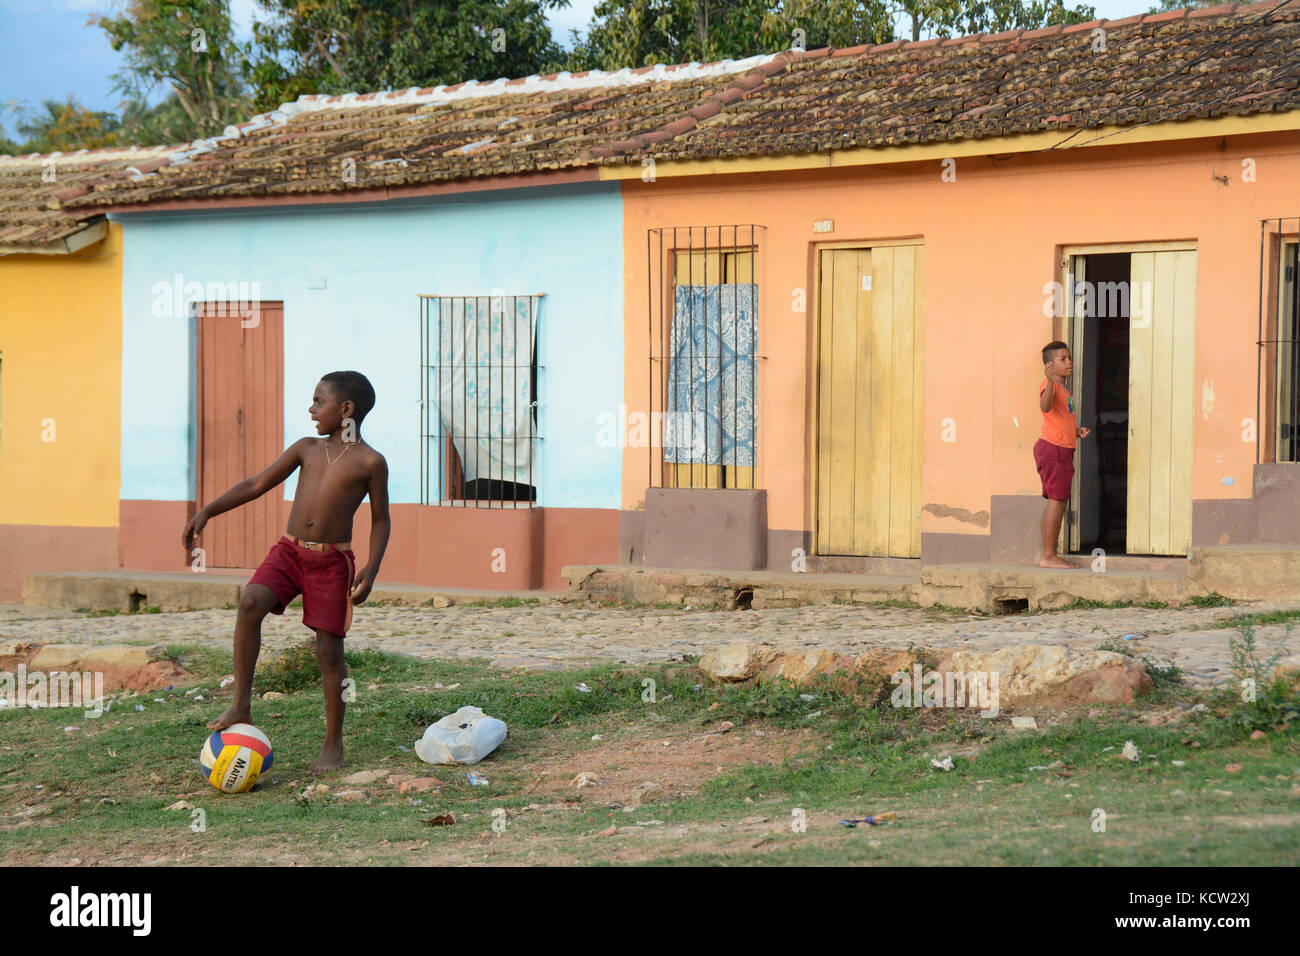 Junge spielt mit einem Ball in der Nähe eine Reihe von bunten Häusern, Trinidad, Kuba Stockfoto